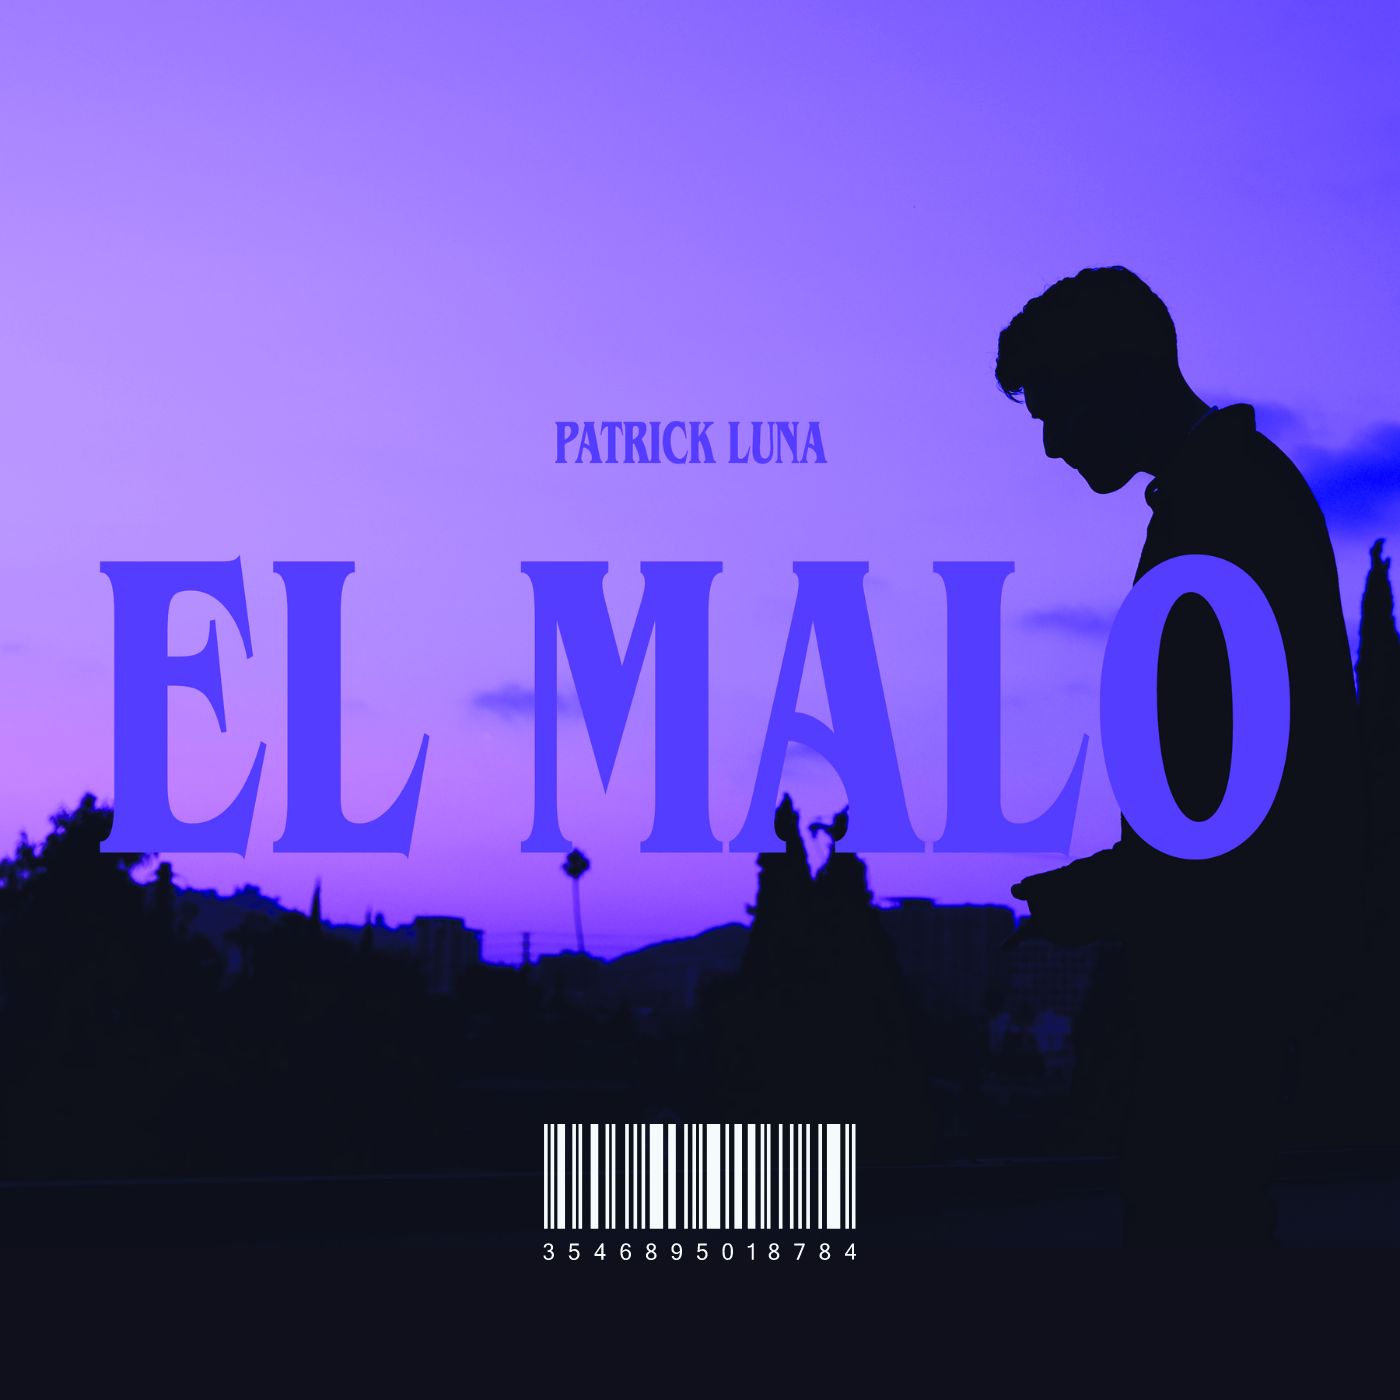 PATRICK LUNA estrena nuevo sencillo “El Malo”